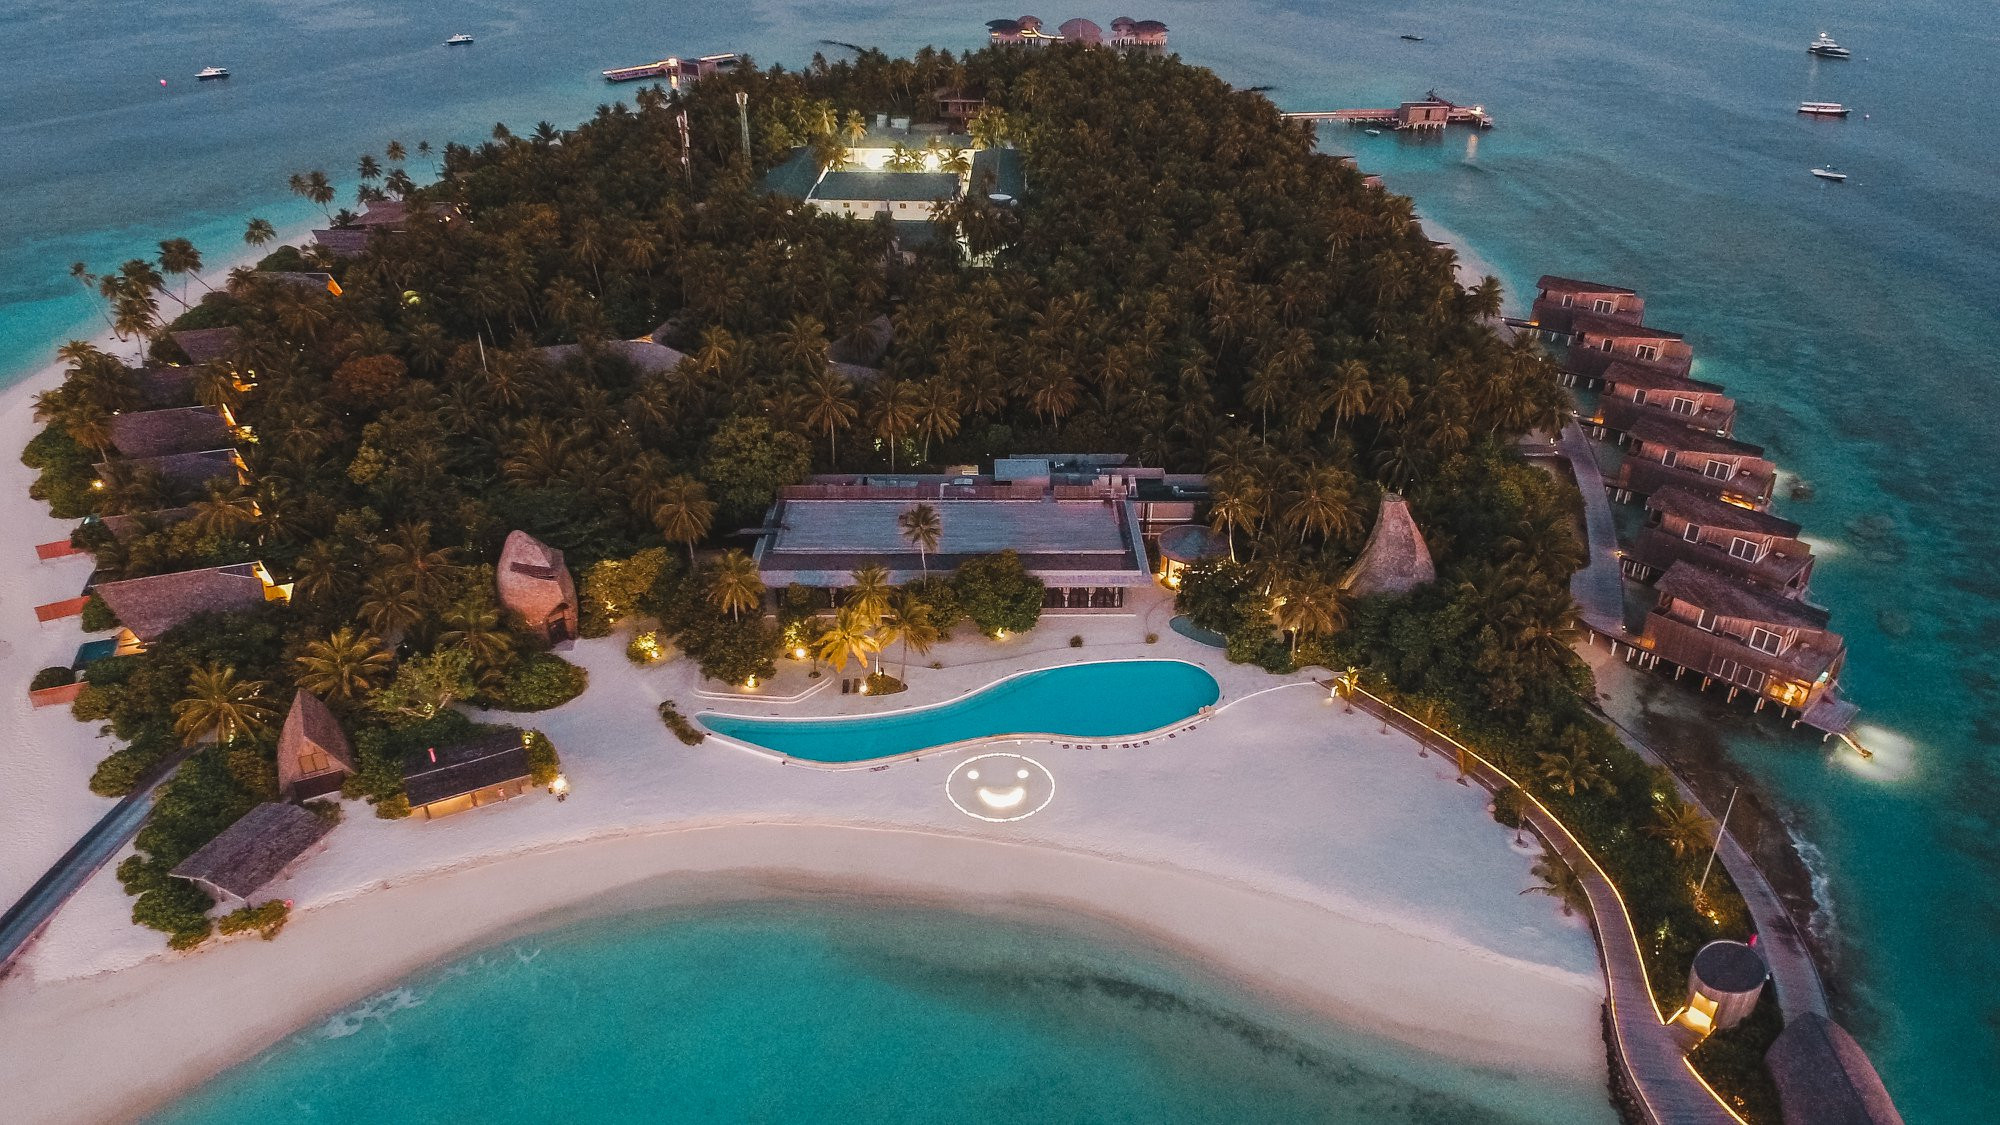 St.Regis Maldives Joins Marriott’s Light for Hope